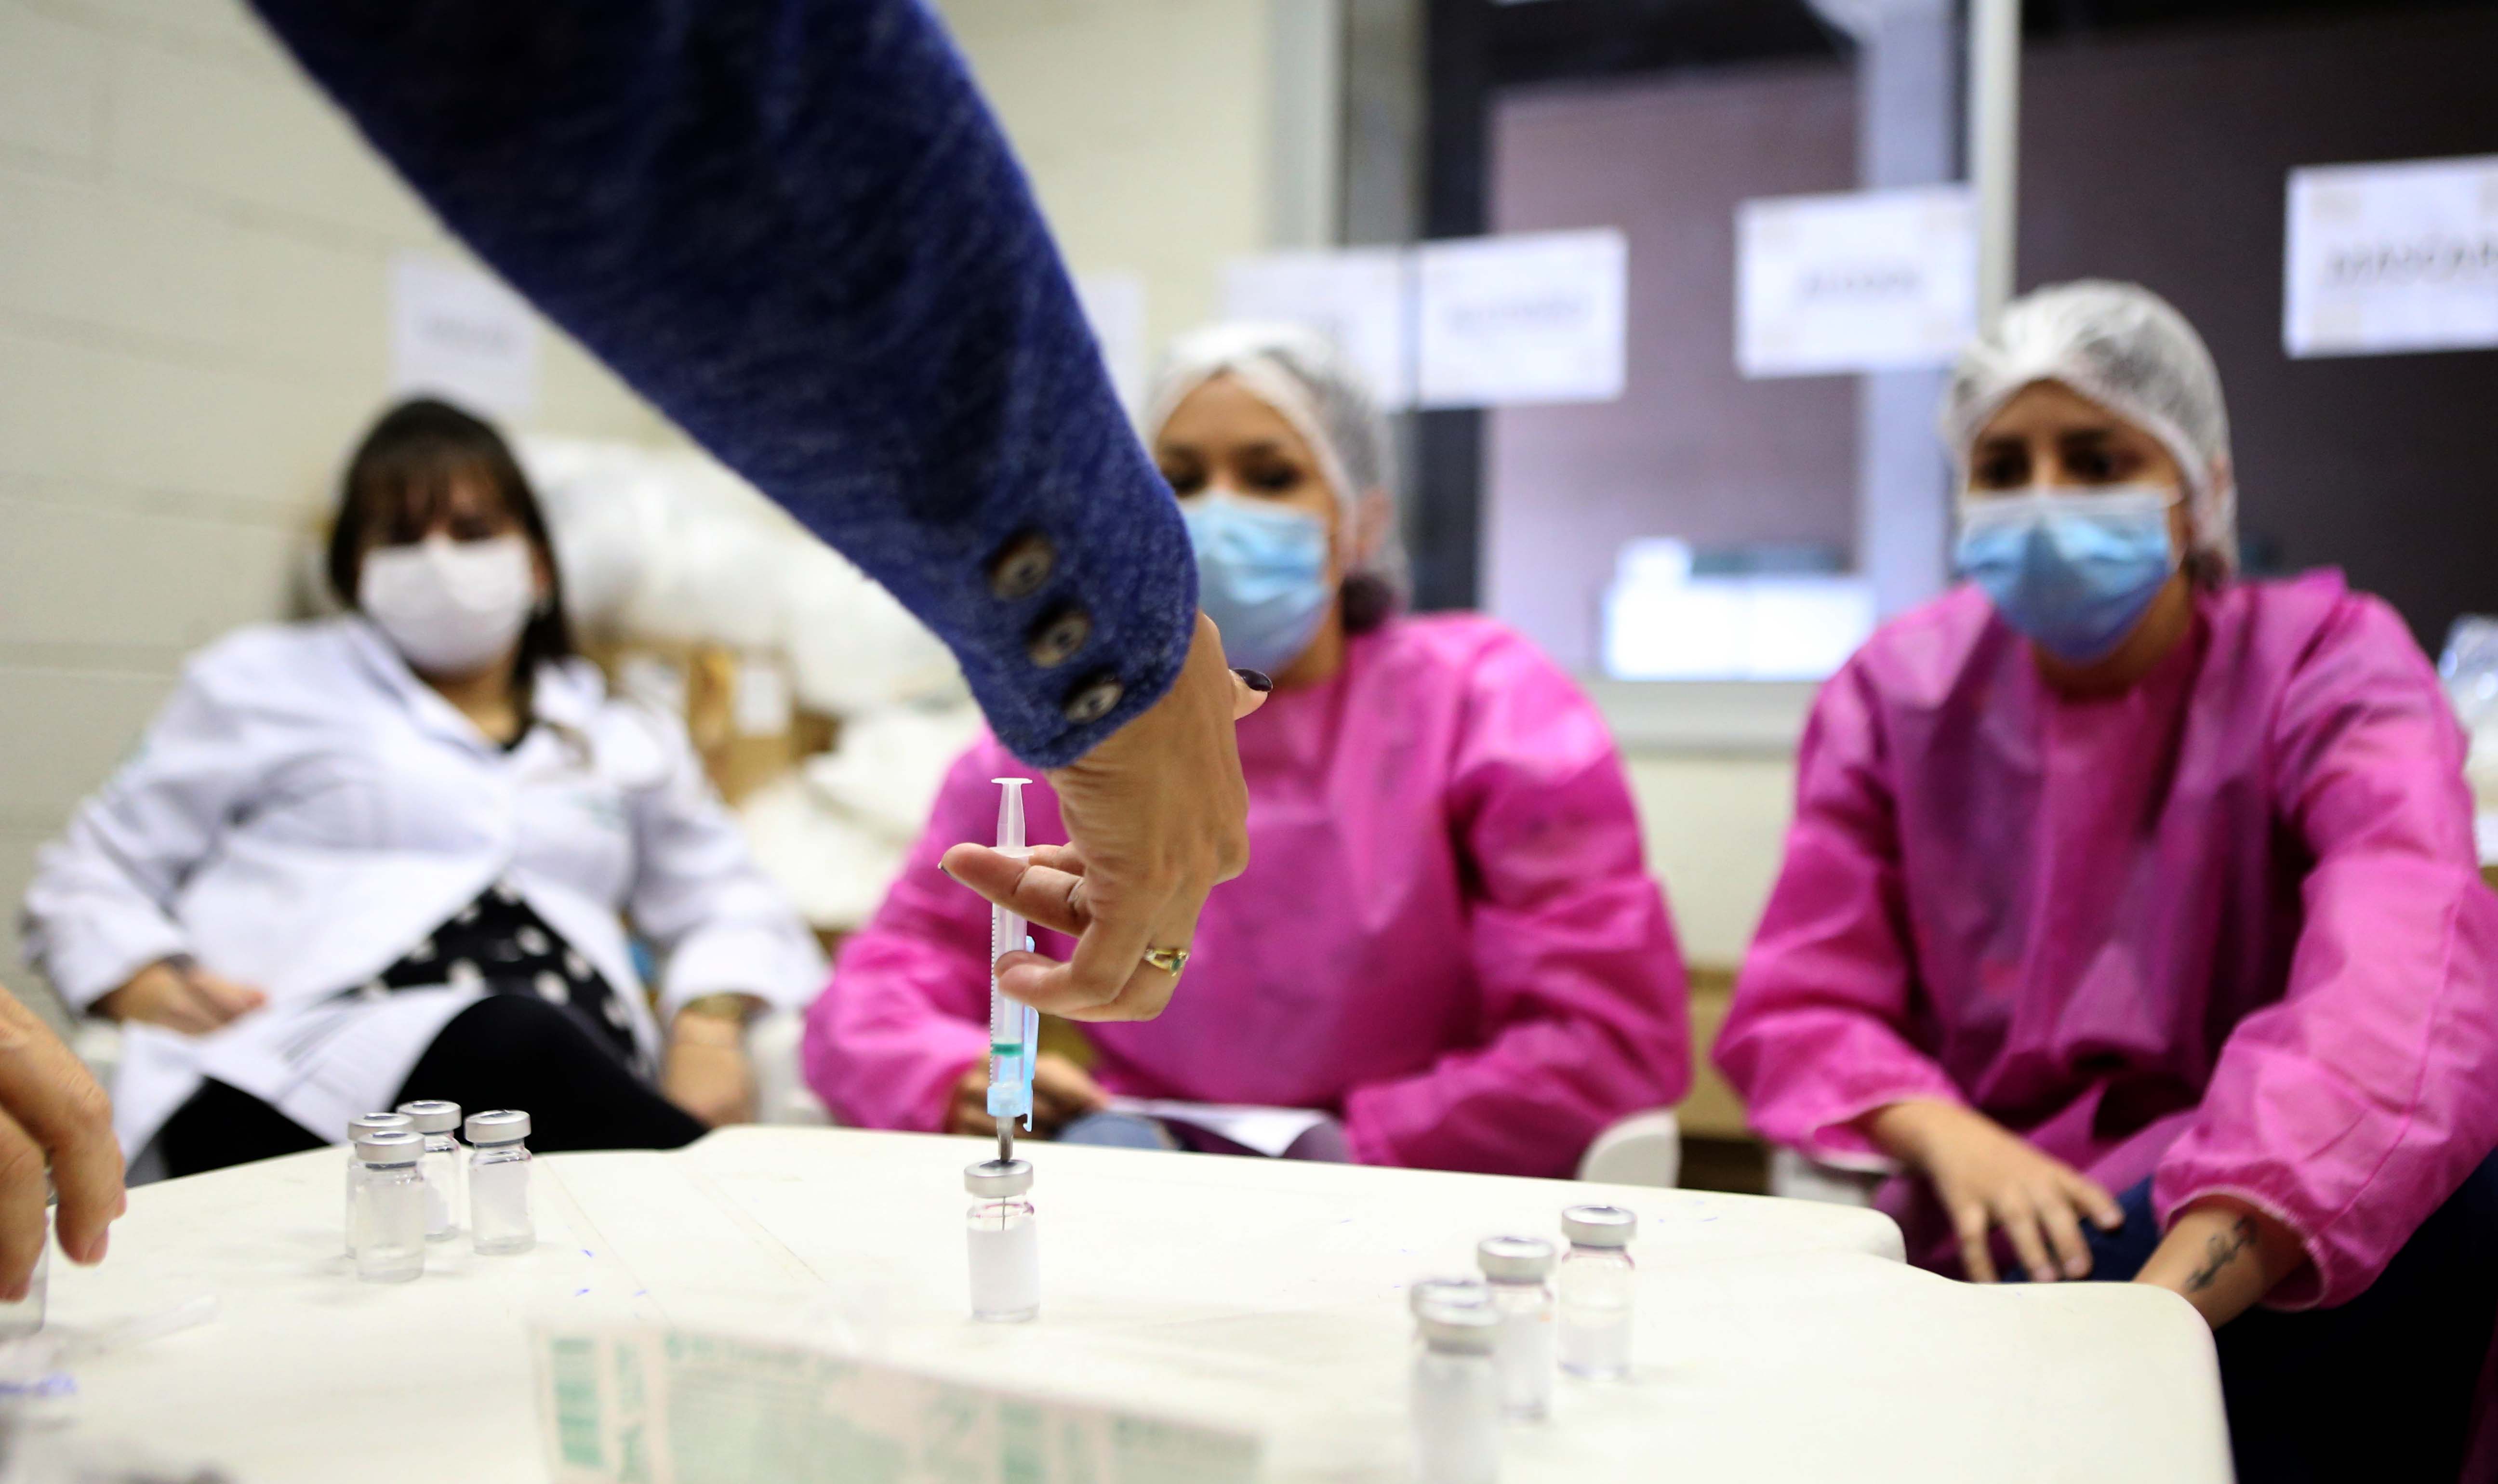 enfermeiras observam enquanto outra coloca uma seringa de vacina em um frasco